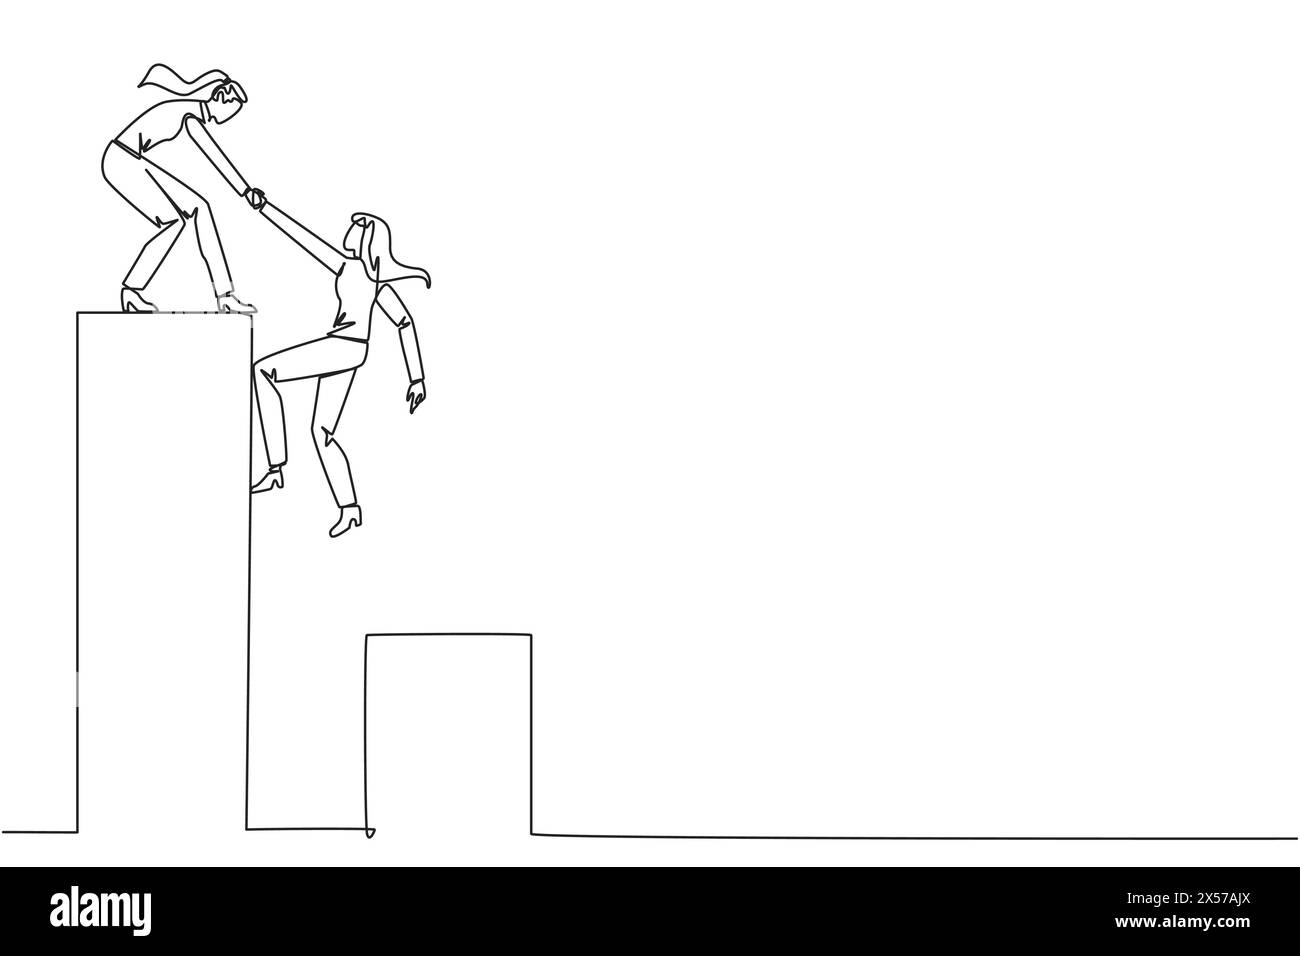 Simple ligne continue dessinant femme d'affaires aide collègue grimpant graphique à barres. Aider à grimper sur un terrain plus élevé. Aller de l'avant et réussir ensemble. Illustration de Vecteur